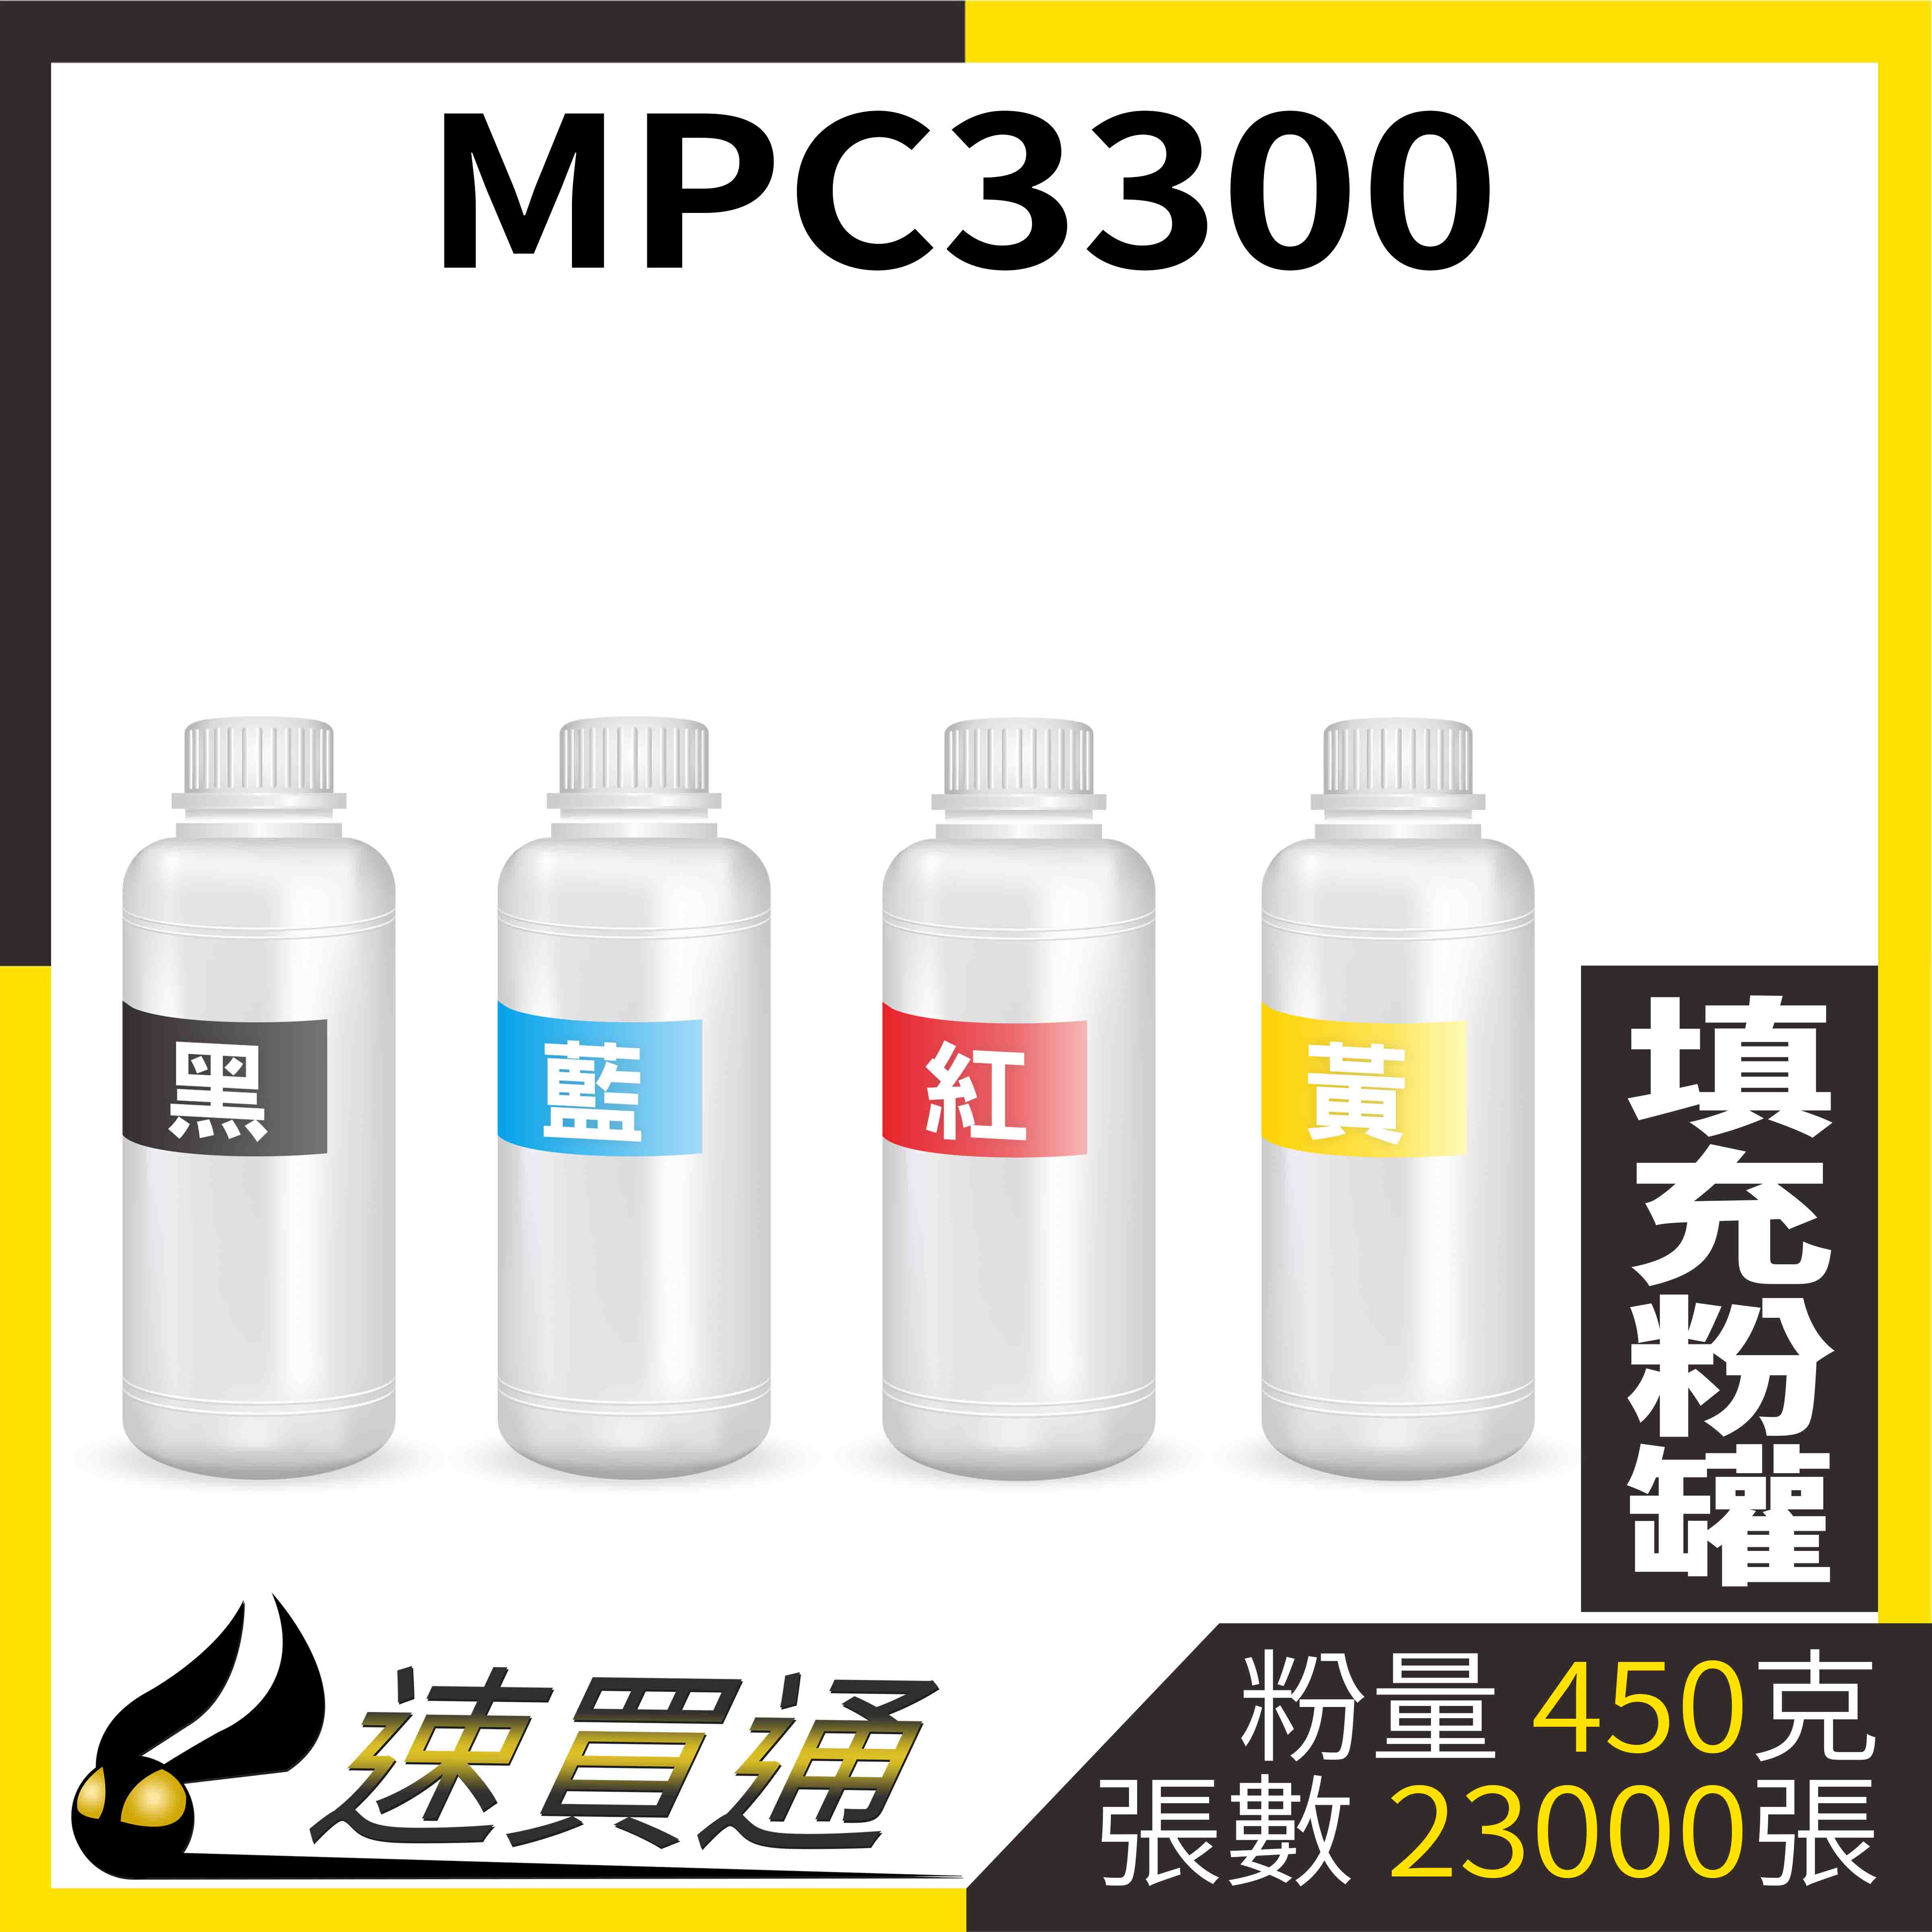 【速買通】RICOH MPC3300 四色綜合 填充式碳粉罐